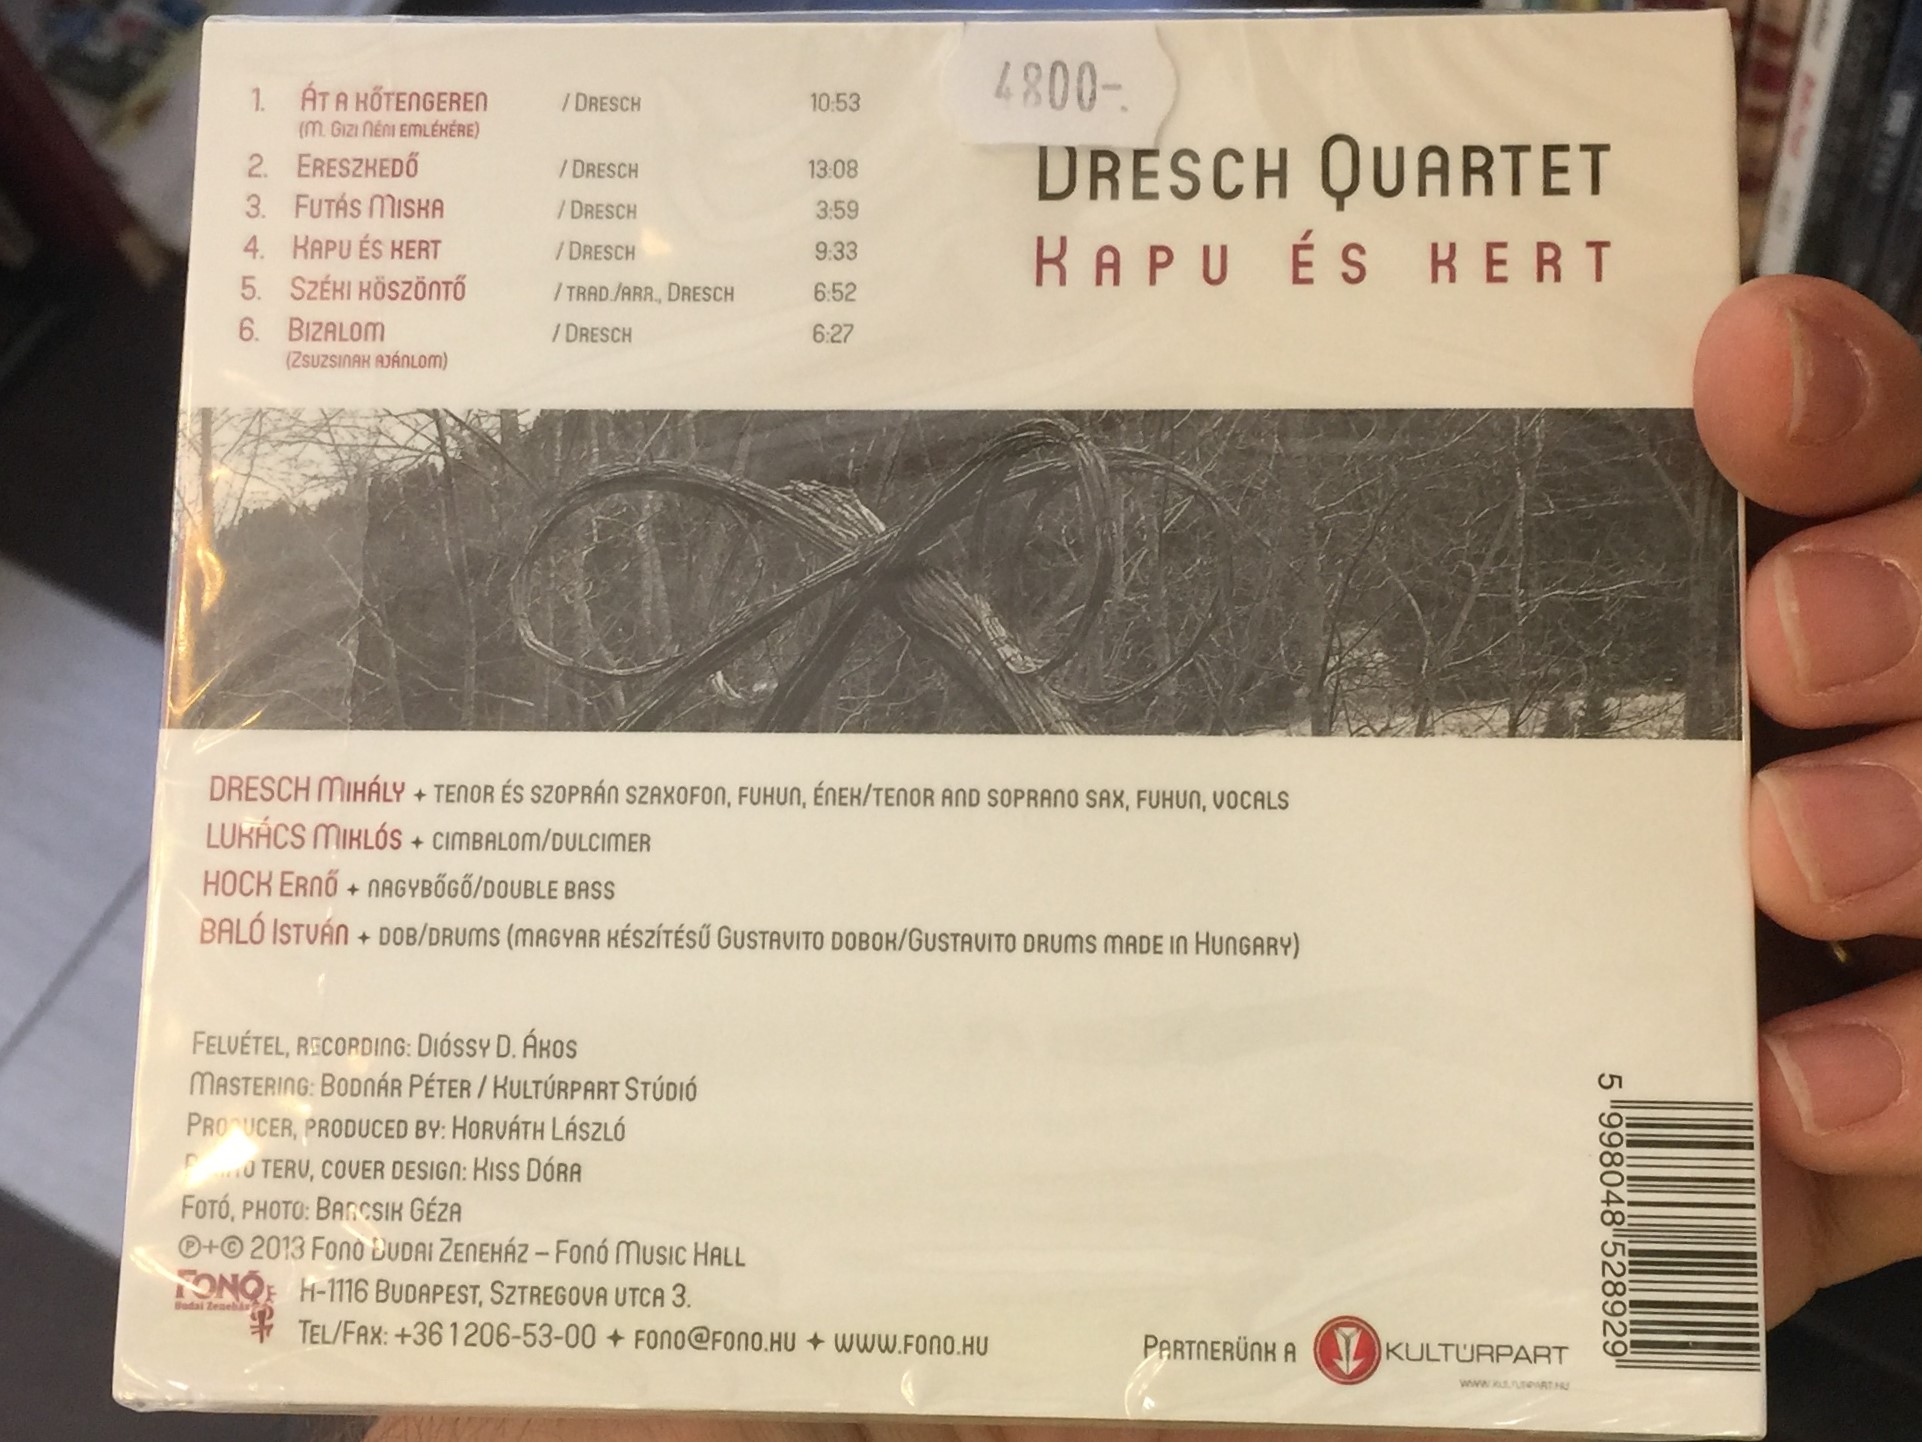 dresch-quartet-kapu-s-kert-fon-records-audio-cd-2013-5998048528929-2-.jpg